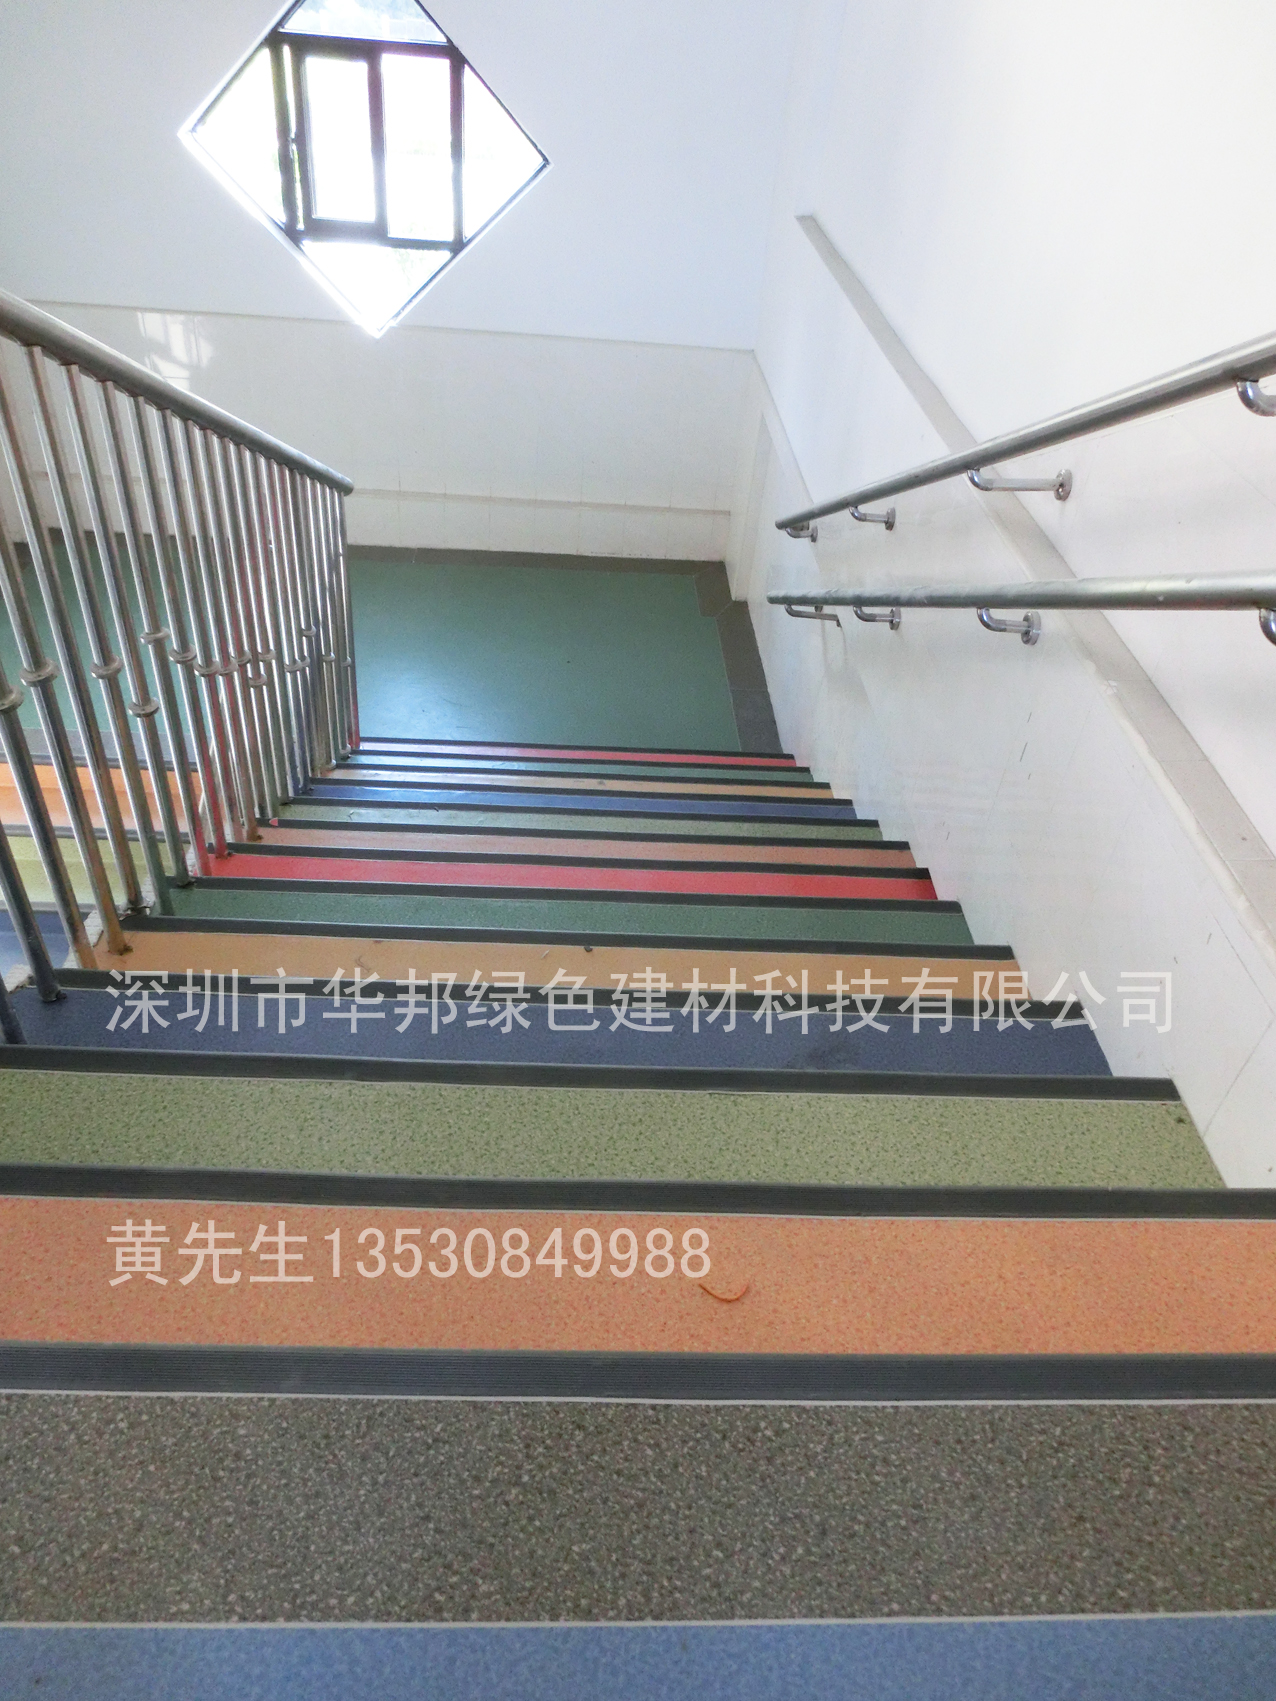 新塘新星幼儿园楼梯走廊PVC胶地板工程案例-同e居地板